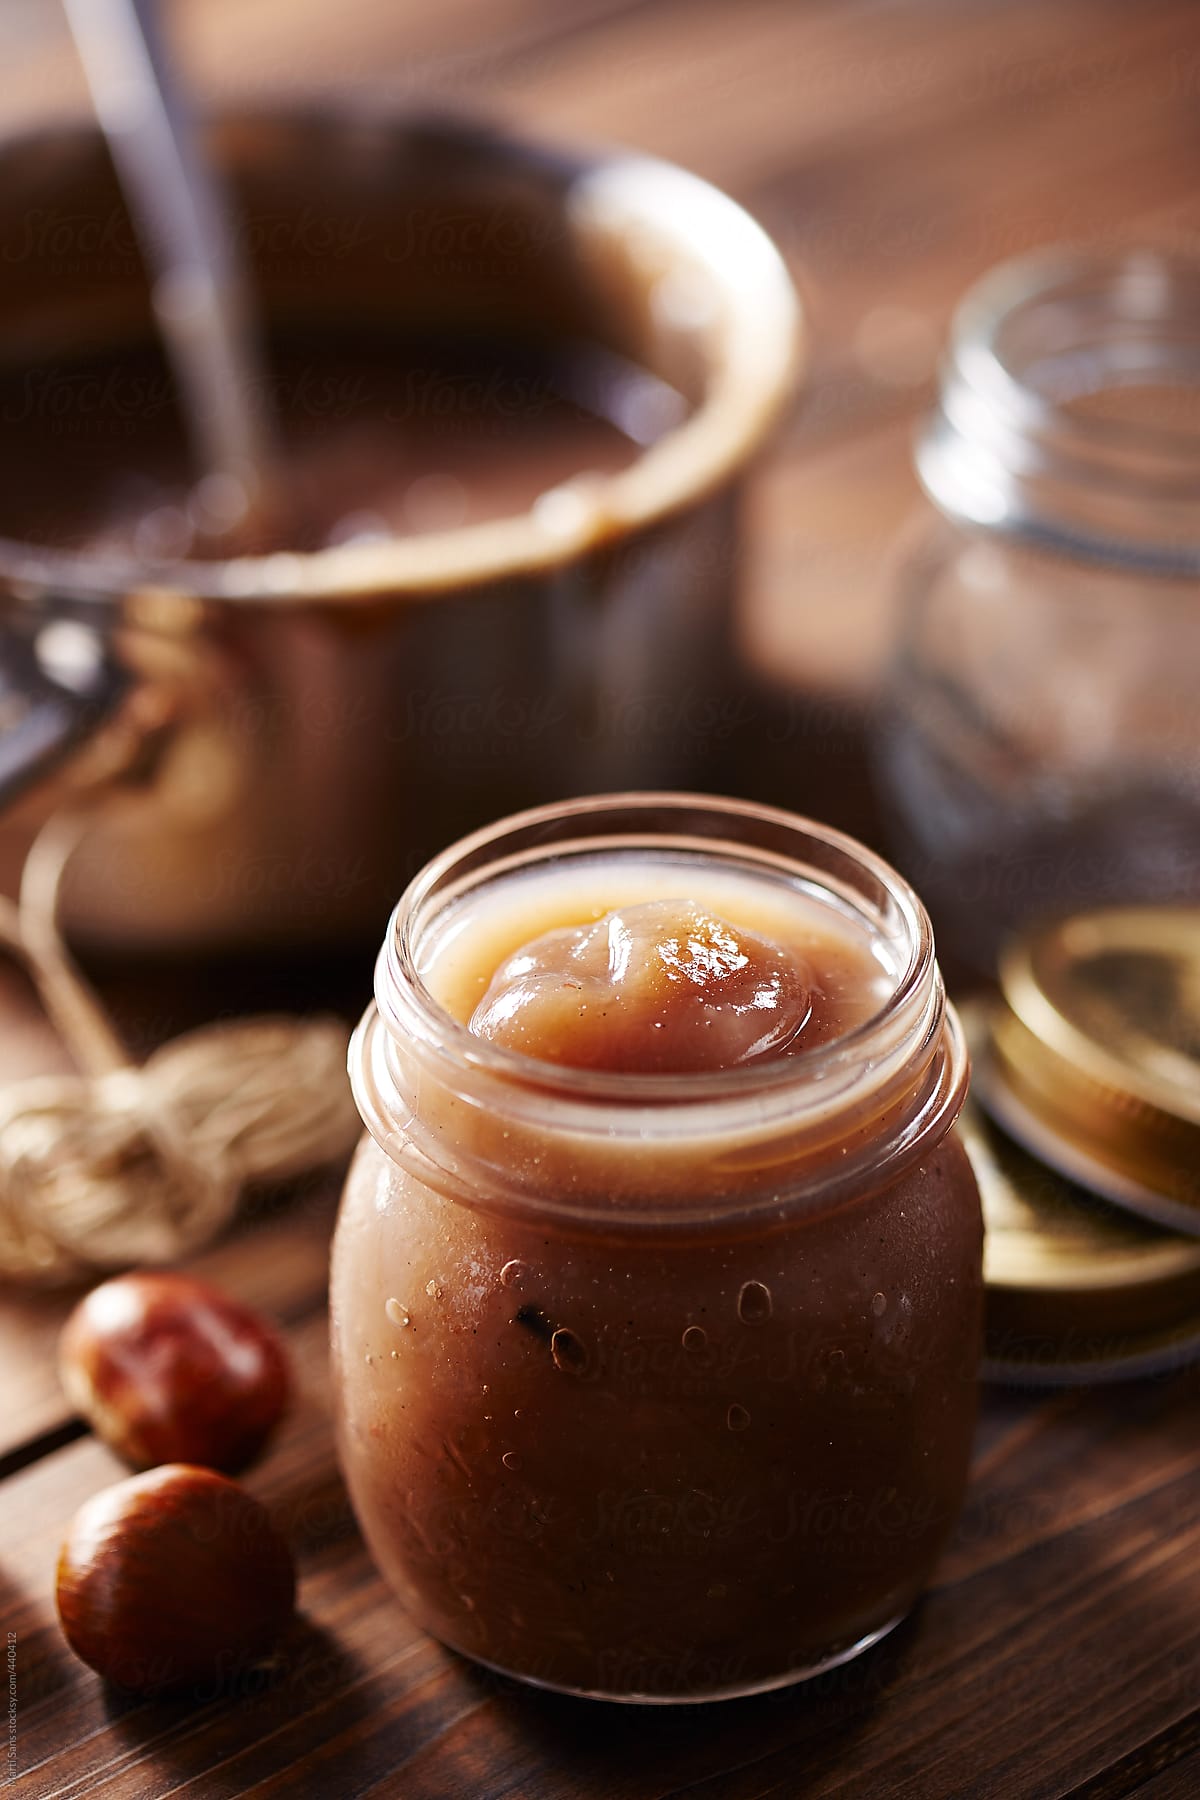 Homemade creme de marrons in a jar